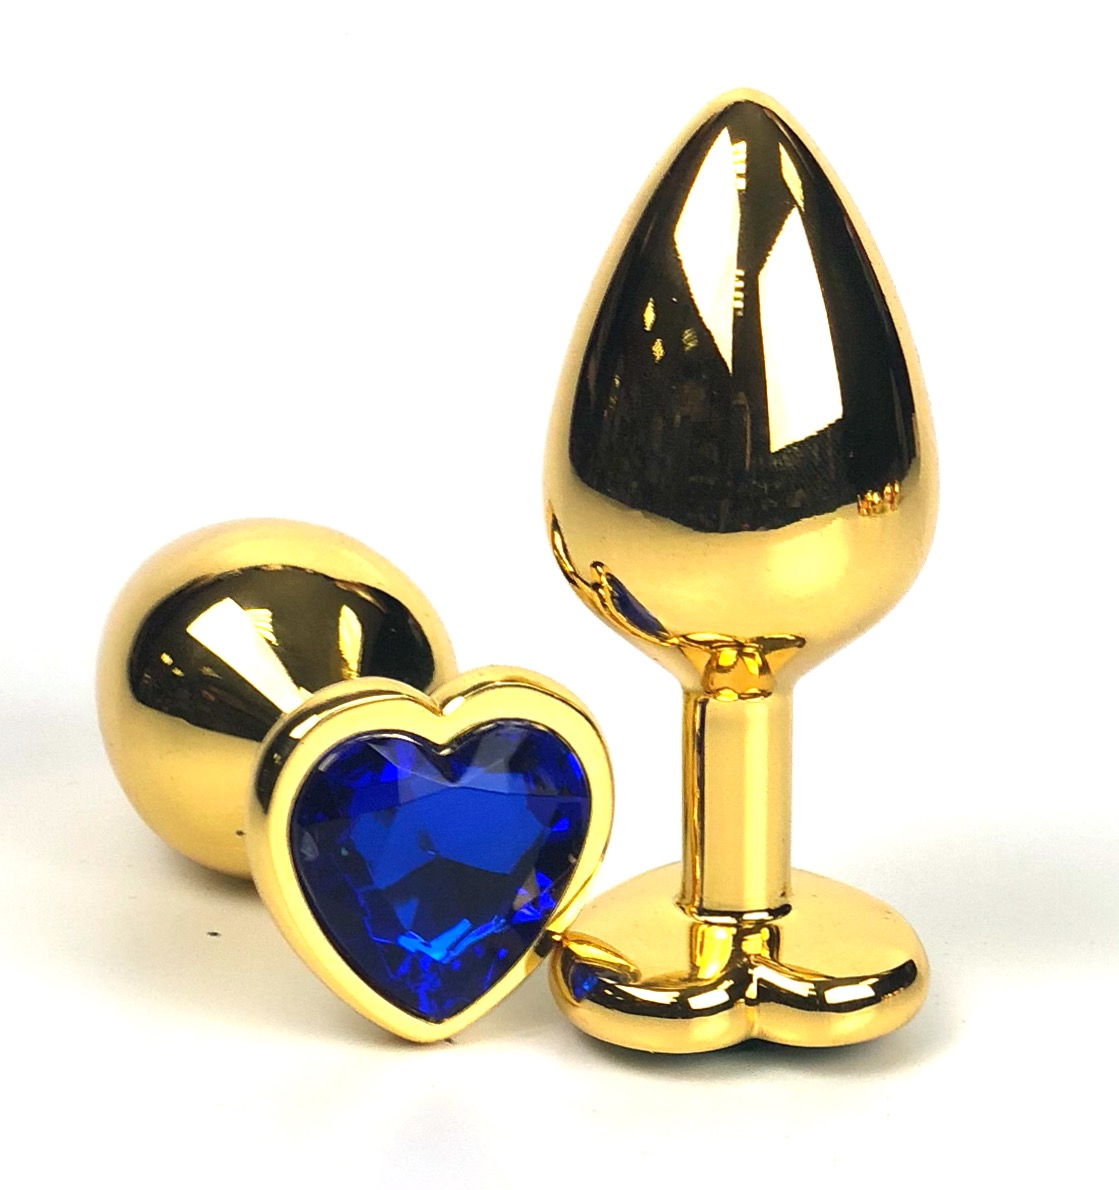 Анальная пробка Vandersex металлическая виде сердечка кристалл синий, золотистая, S 